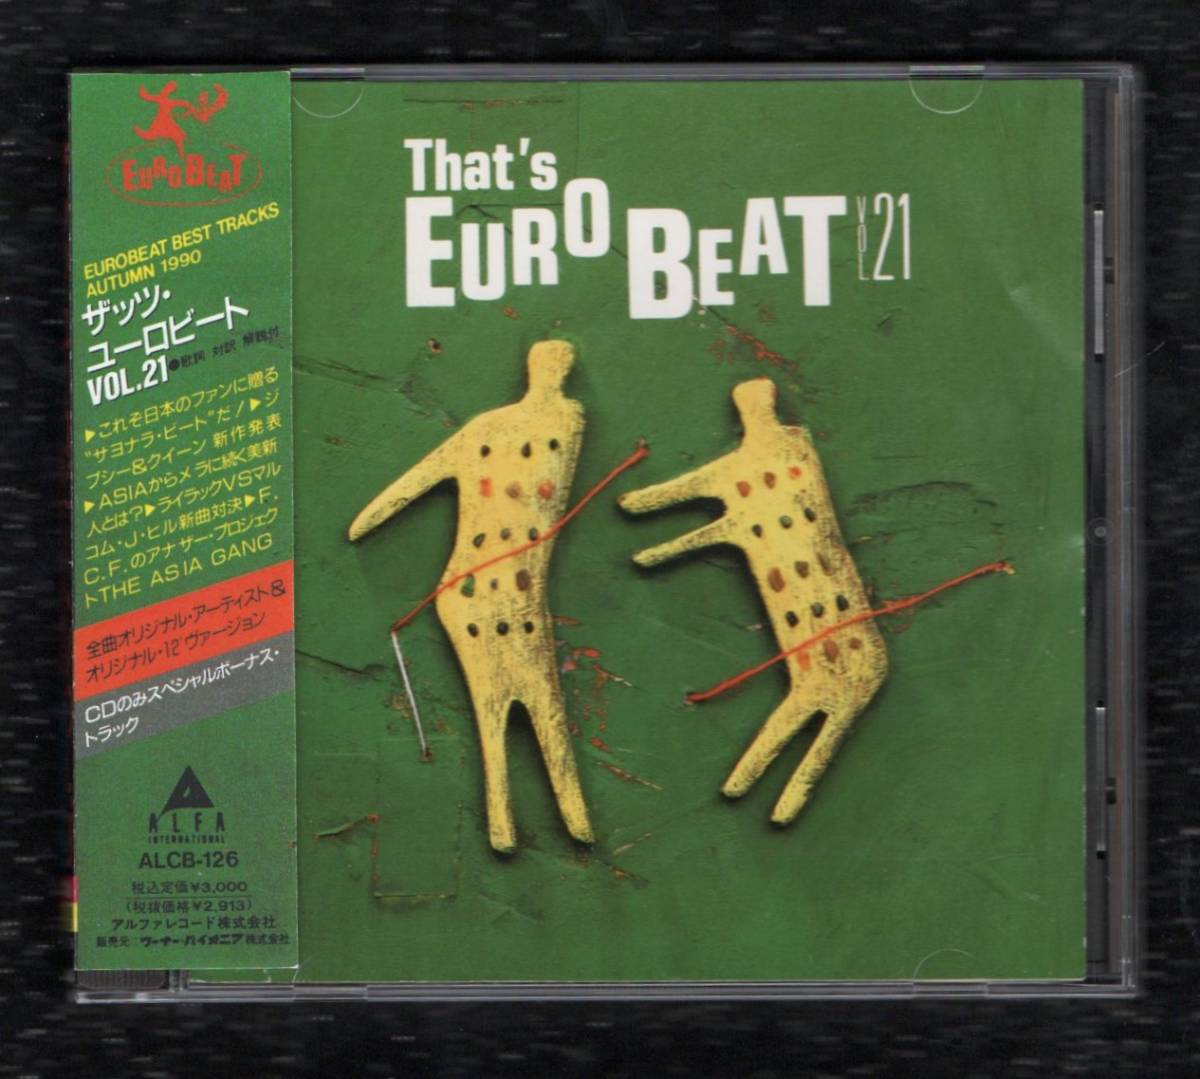 Σ 1990年 16曲入 CD/ザッツユーロビート VOL.21 THAT'S EUROBEAT/シンディ ジプシー&クイーン ジェニーキー マイクハザード FCF 他_※プラケースは交換済みです。